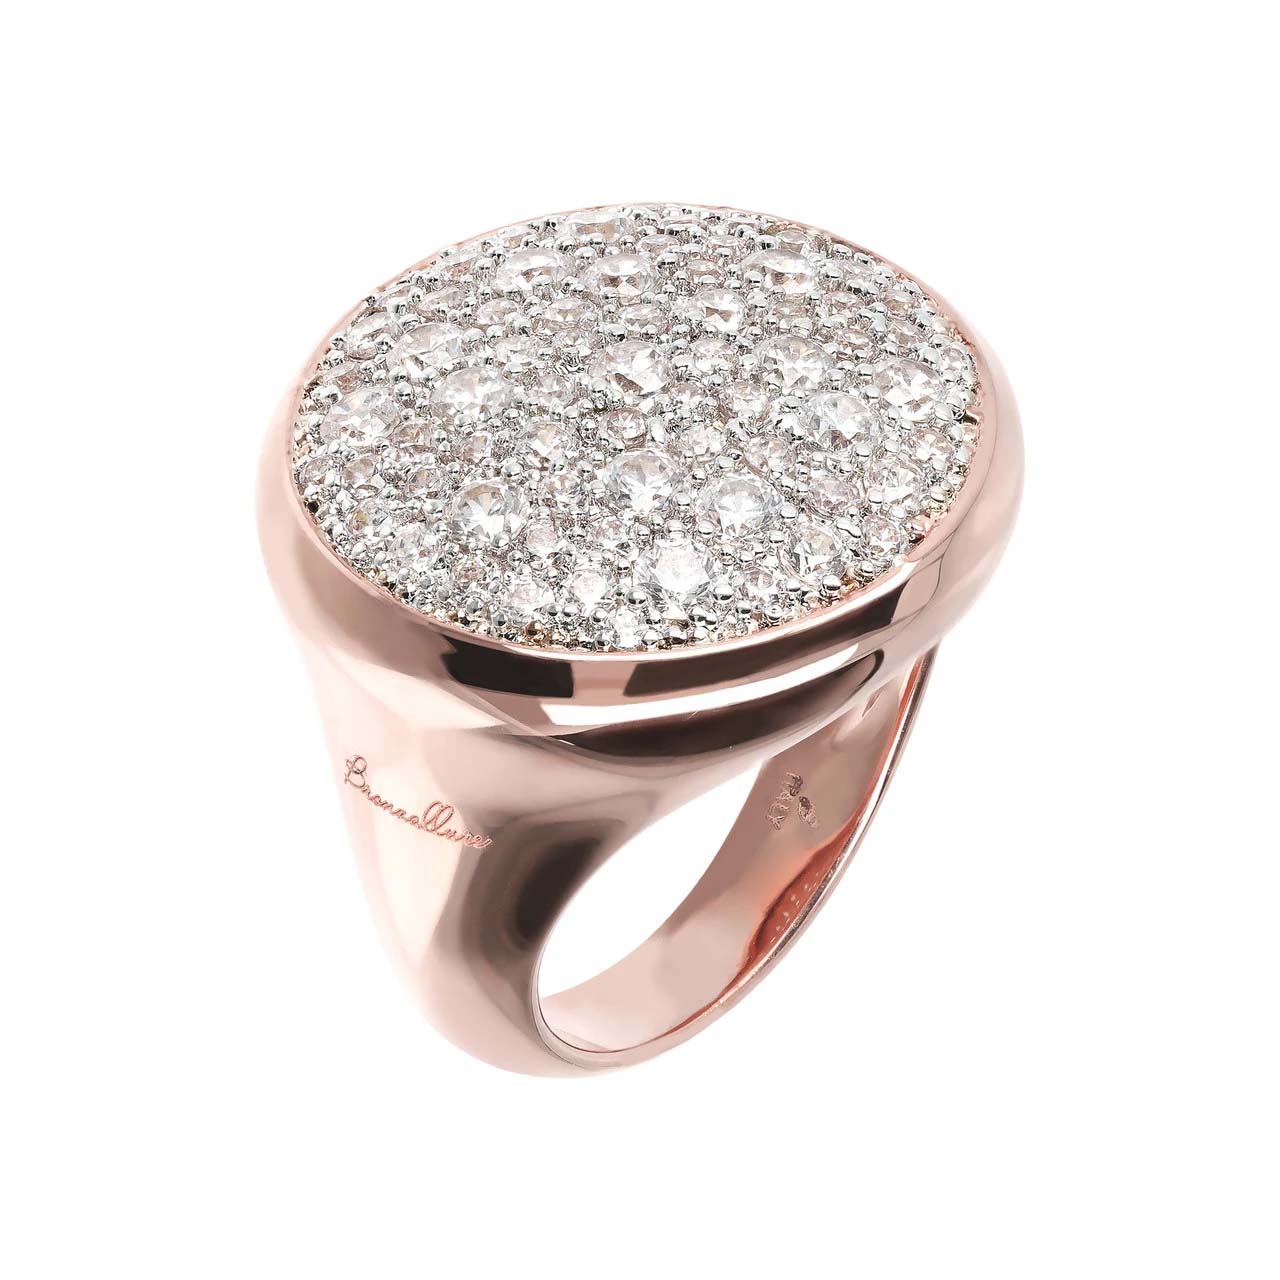 Hurtownia portugalskiego pierścionka ze srebra próby 925, pozłacanego 18-karatowym różowym złotem, hurtownik na zamówienie, producent biżuterii OEM/ODM